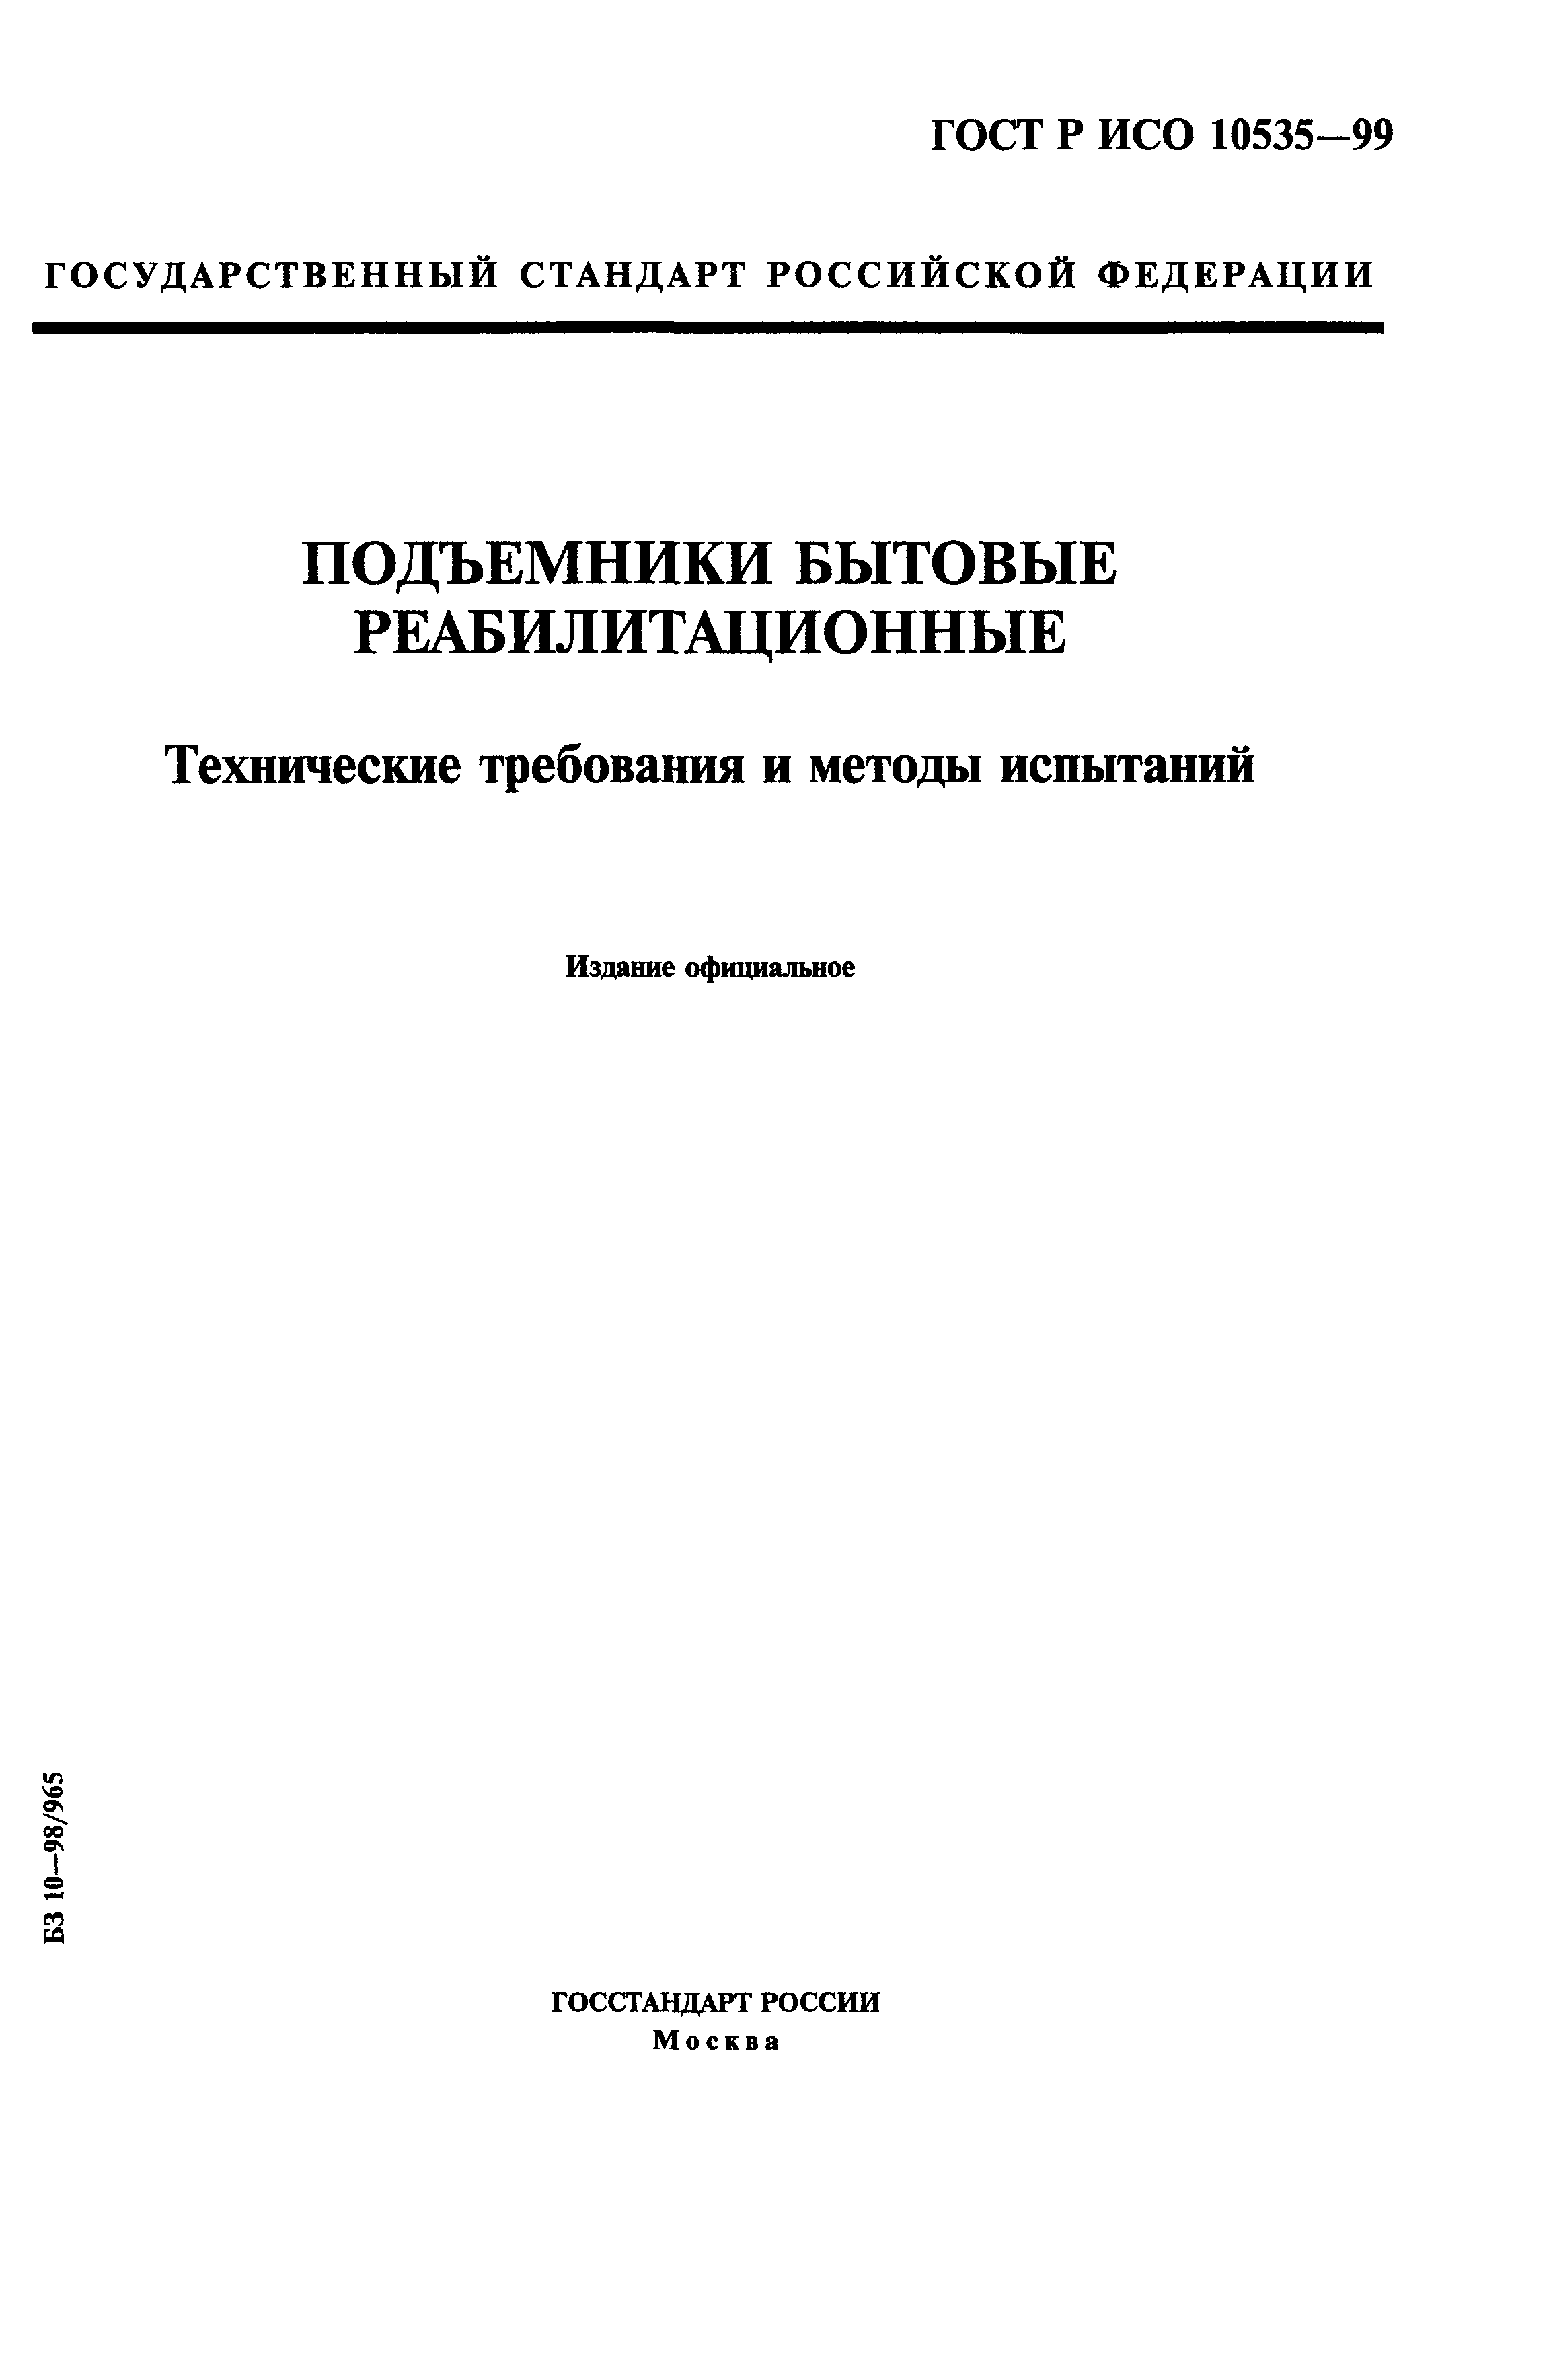 ГОСТ Р ИСО 10535-99